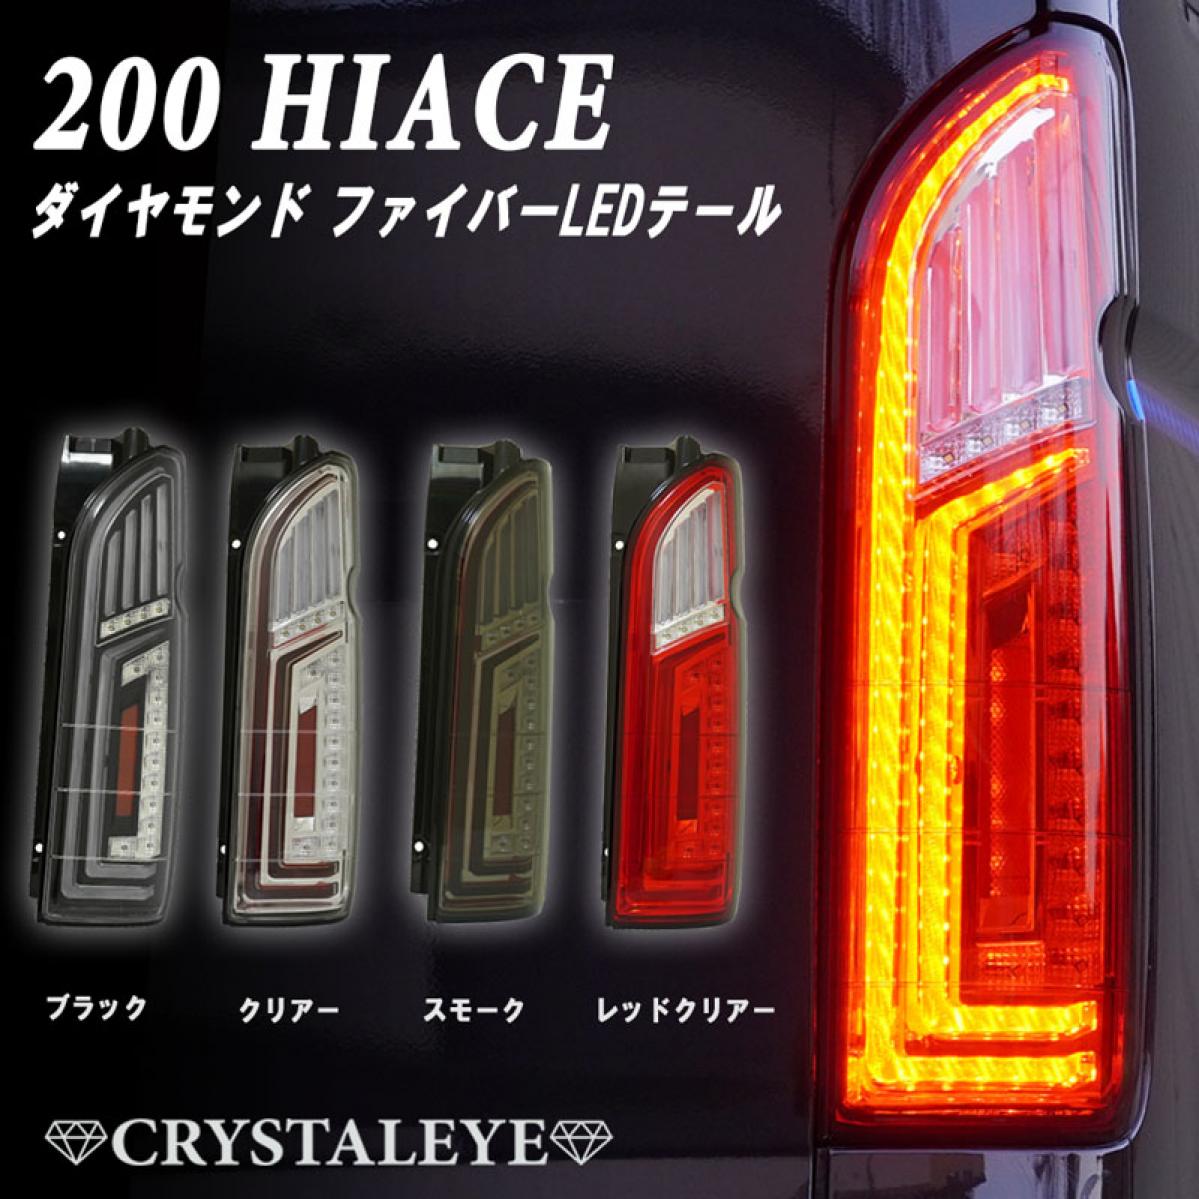 ハイエース 200系 ブロック ファイバー LED テールランプ シーケンシャルパーツ